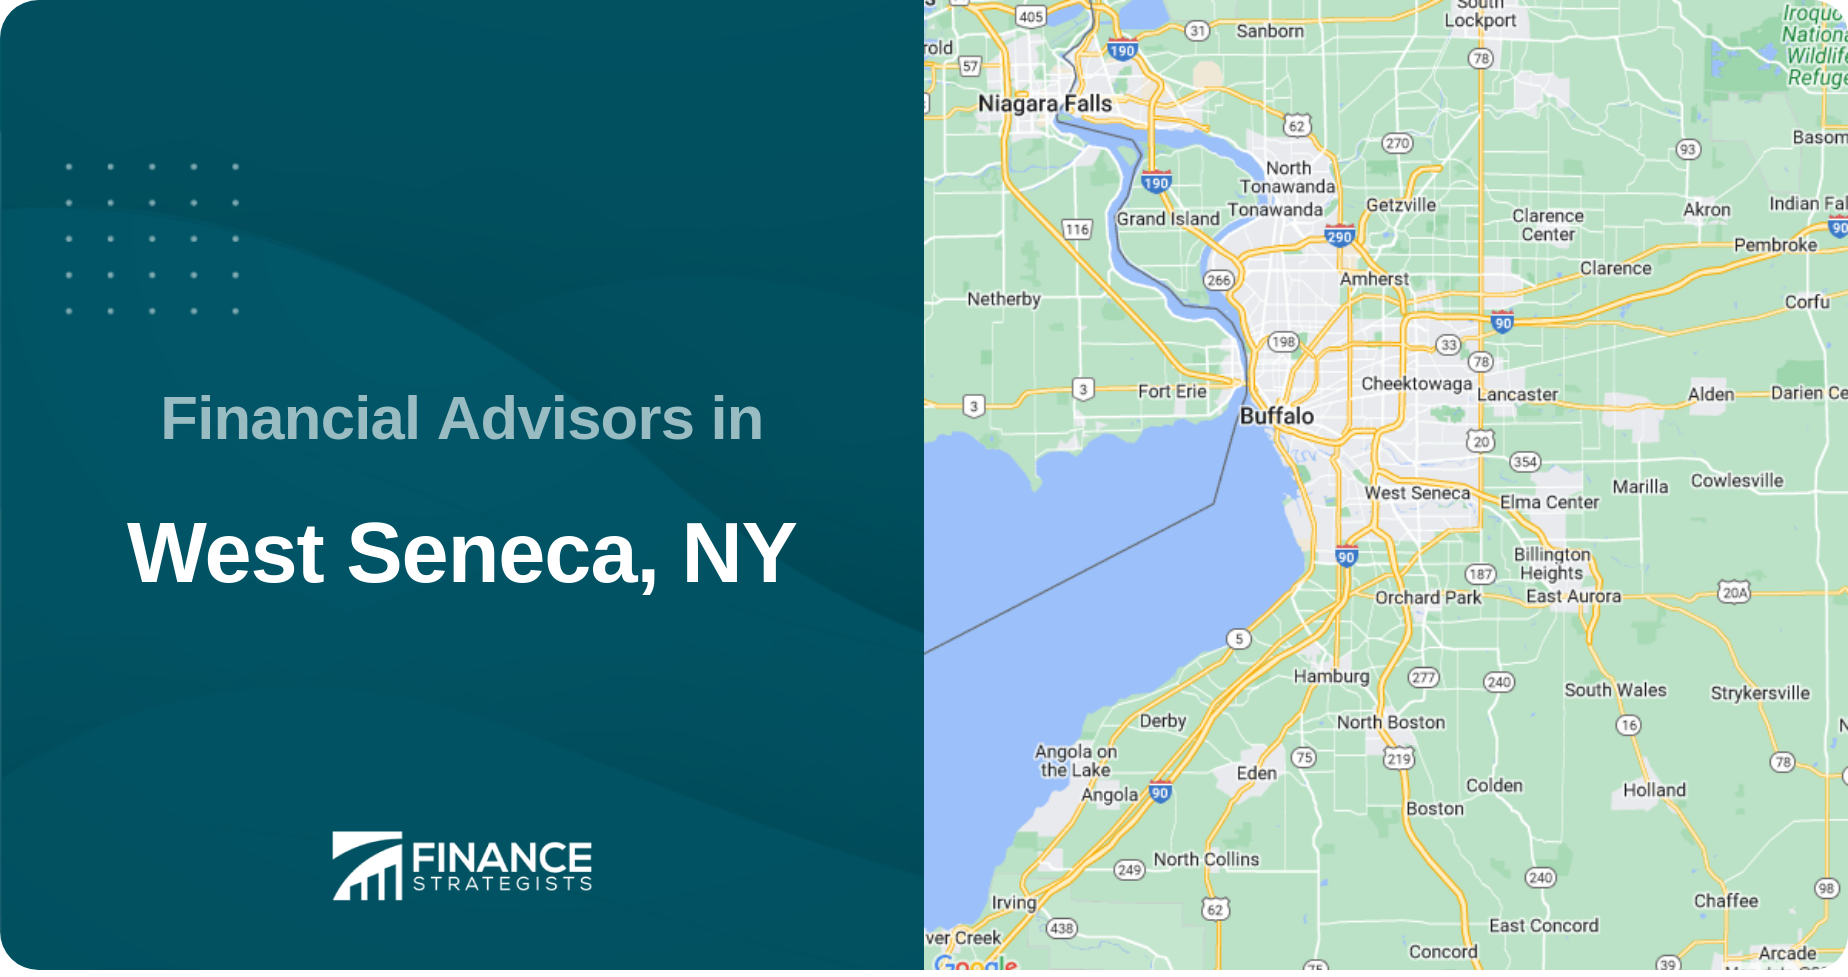 Financial Advisors in West Seneca, NY